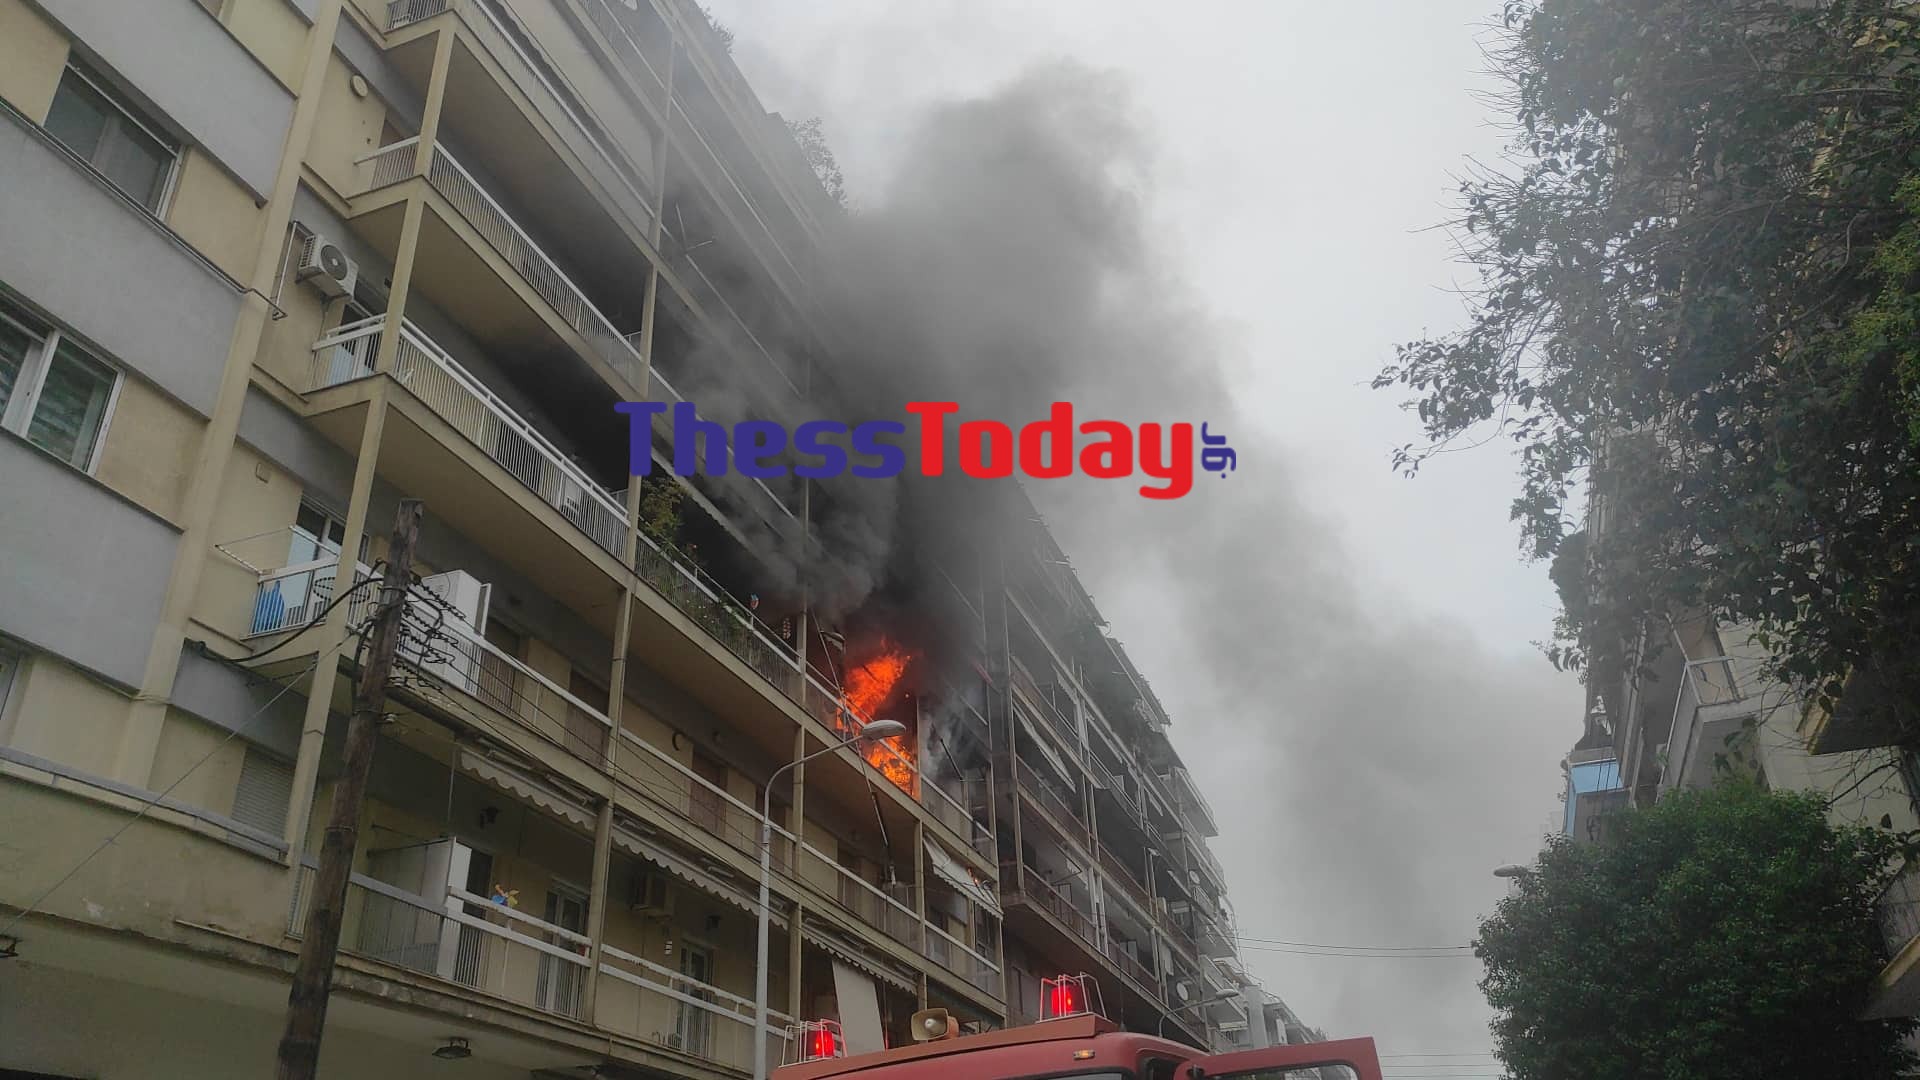 Θεσσαλονίκη: Φωτιά σε διαμέρισμα στην οδό Μπότσαρη – Εκκενώθηκε η πολυκατοικία – ΒΙΝΤΕΟ και ΦΩΤΟ